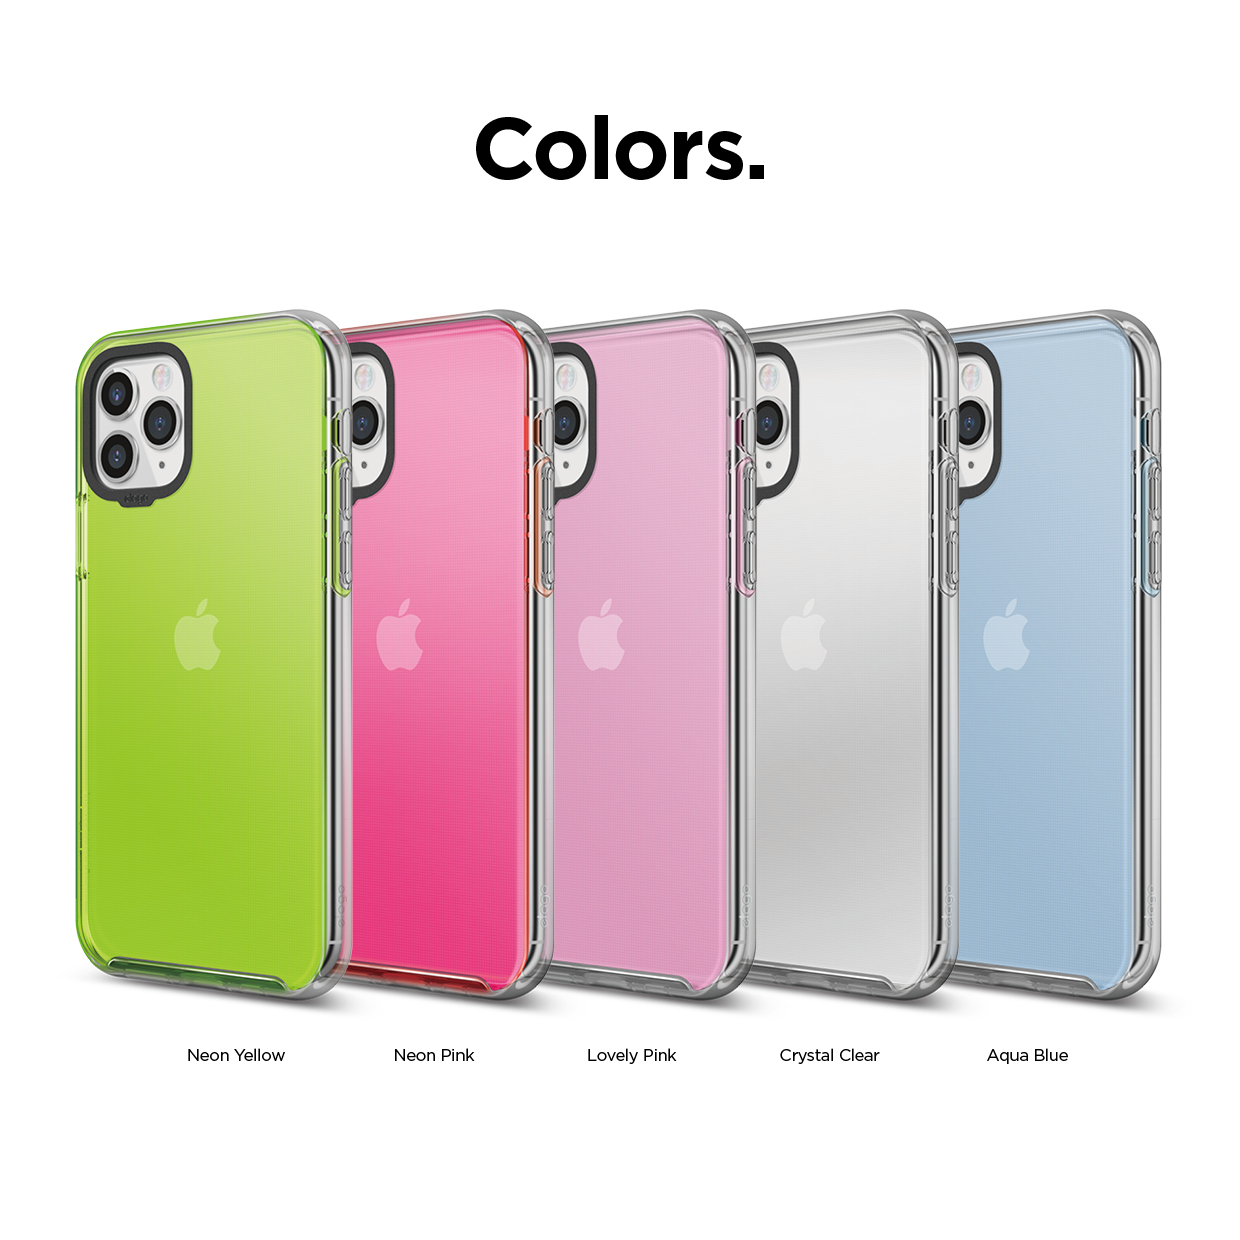 Iphone pro colors. Iphone 11 Pro Color. Iphone 11 Pro Colors. Iphone 11 all Colours. Линейка 11 айфонов цвета.